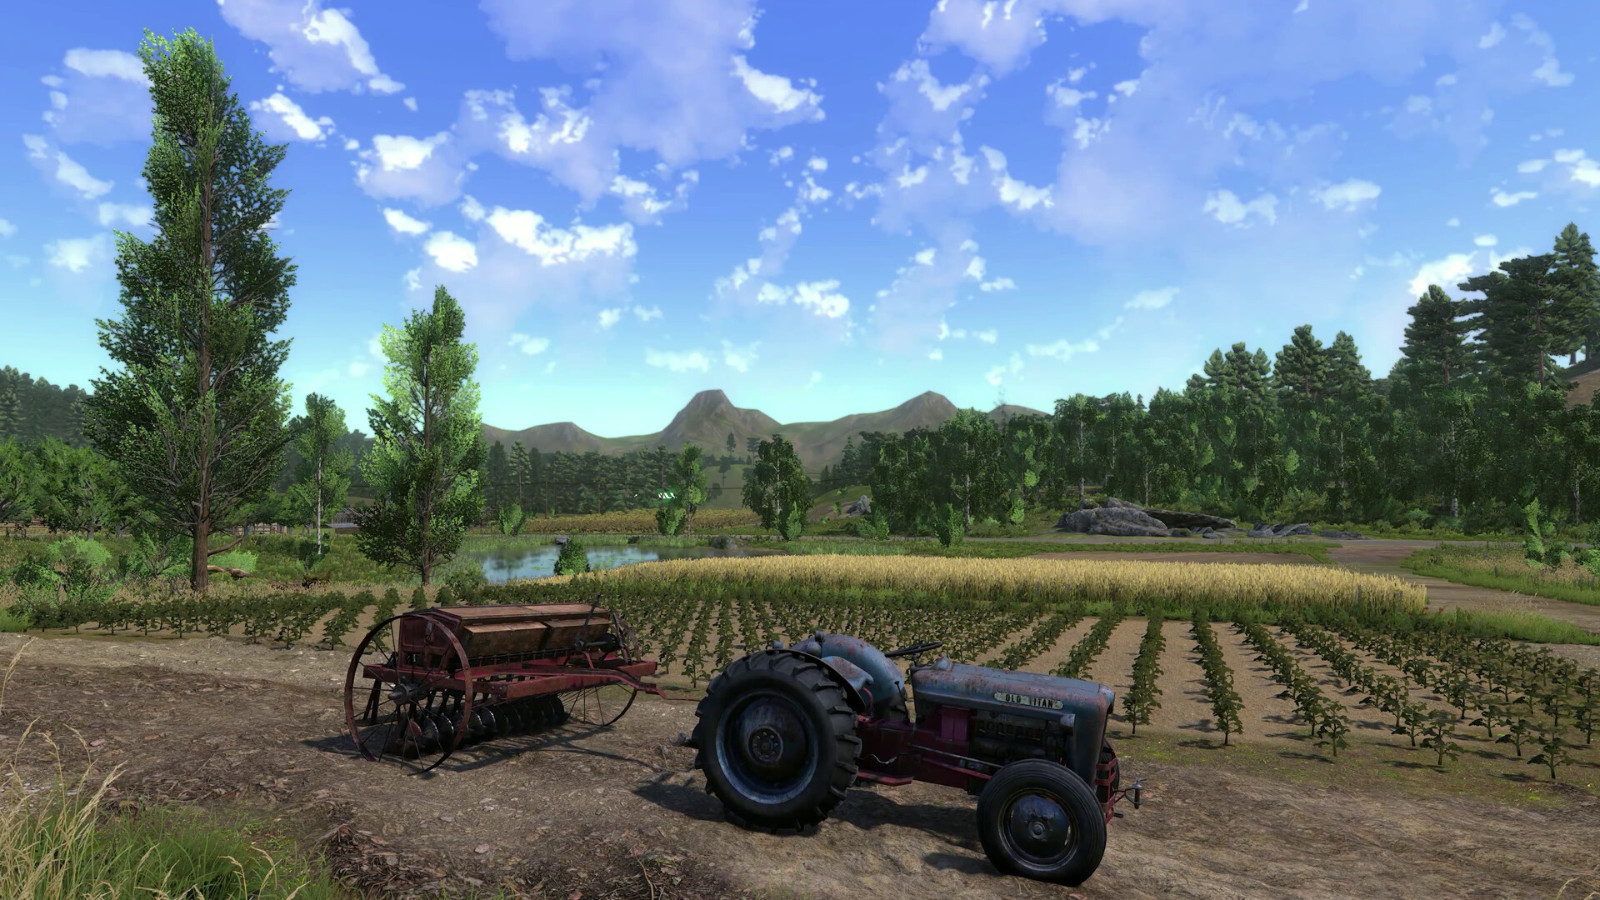 模拟经营游戏《农夫王朝2》Steam页面上线 支持简体中文